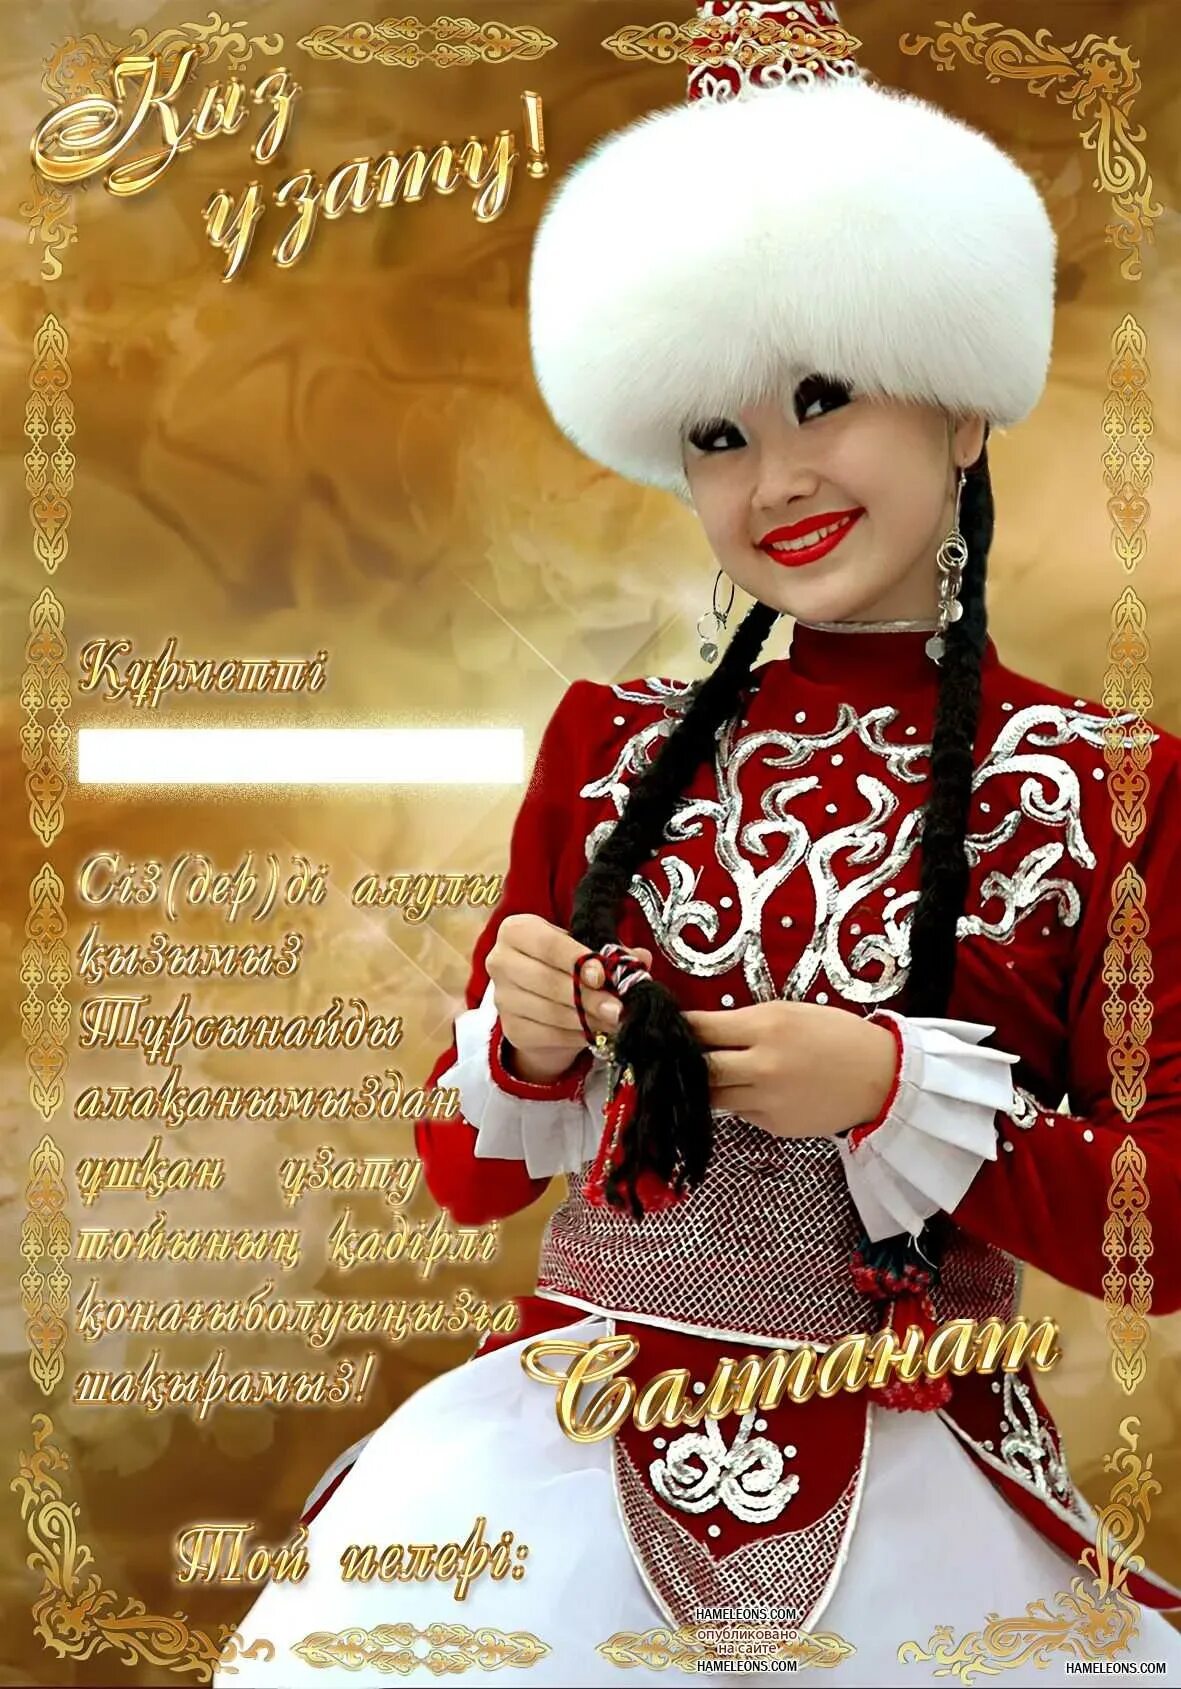 Как поздравить казаха. Поздравление казаха с днем рождения. Казахские открытки с днем рождения. Открытки с юбилеем на казахском языке. Казах поздравляет с днем рождения.